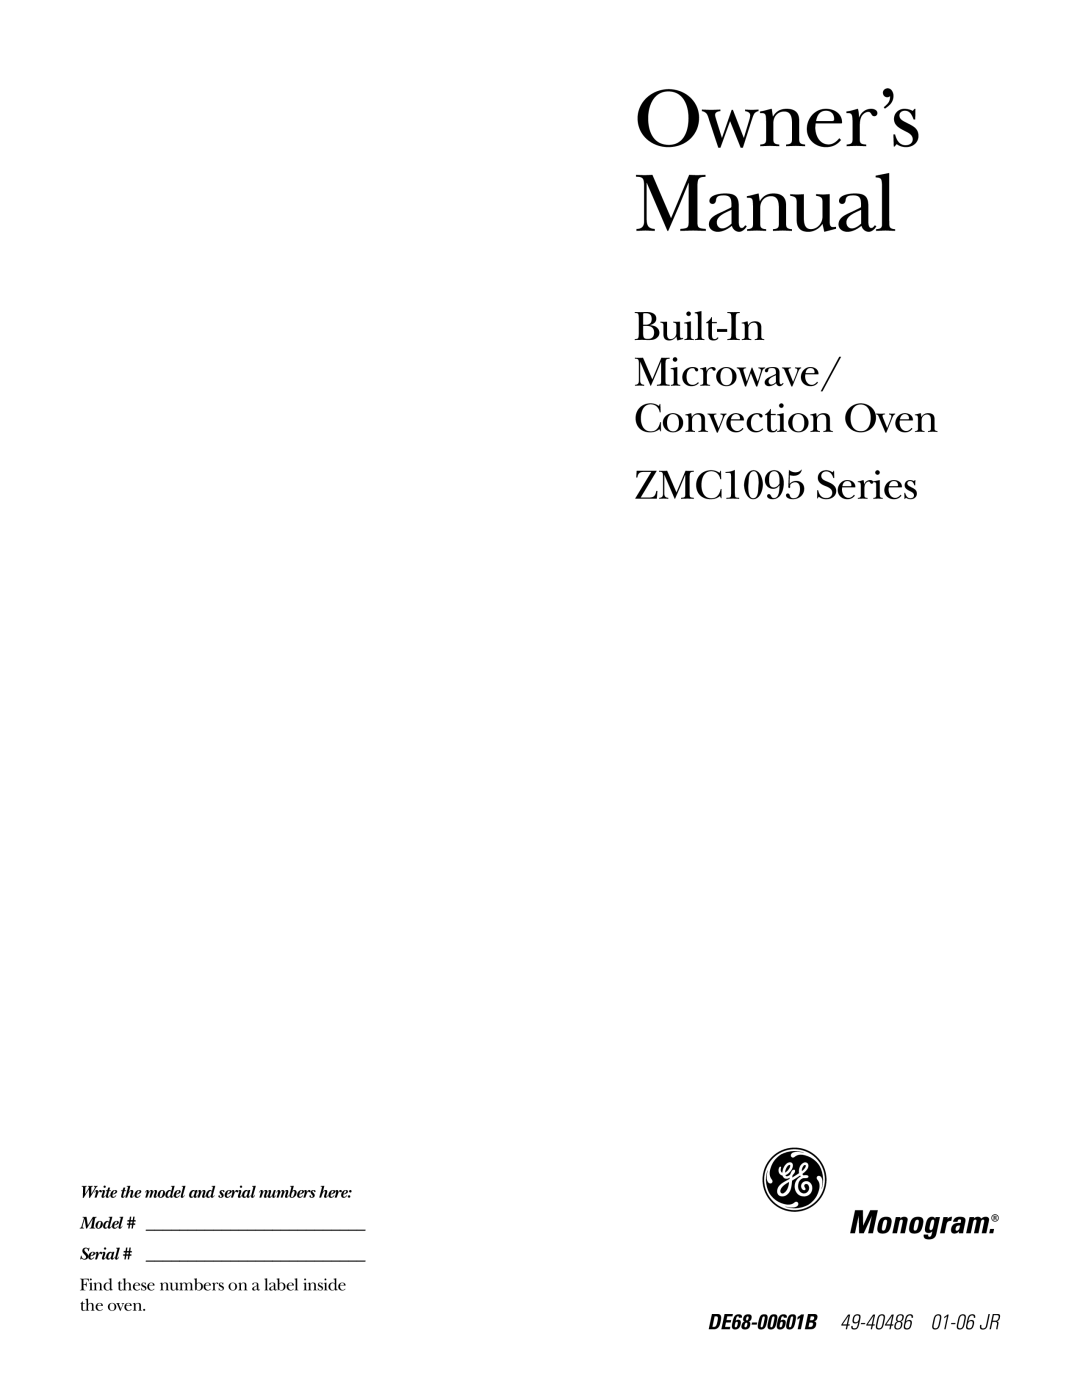 GE ZMC1095 owner manual Owner’s Manual 